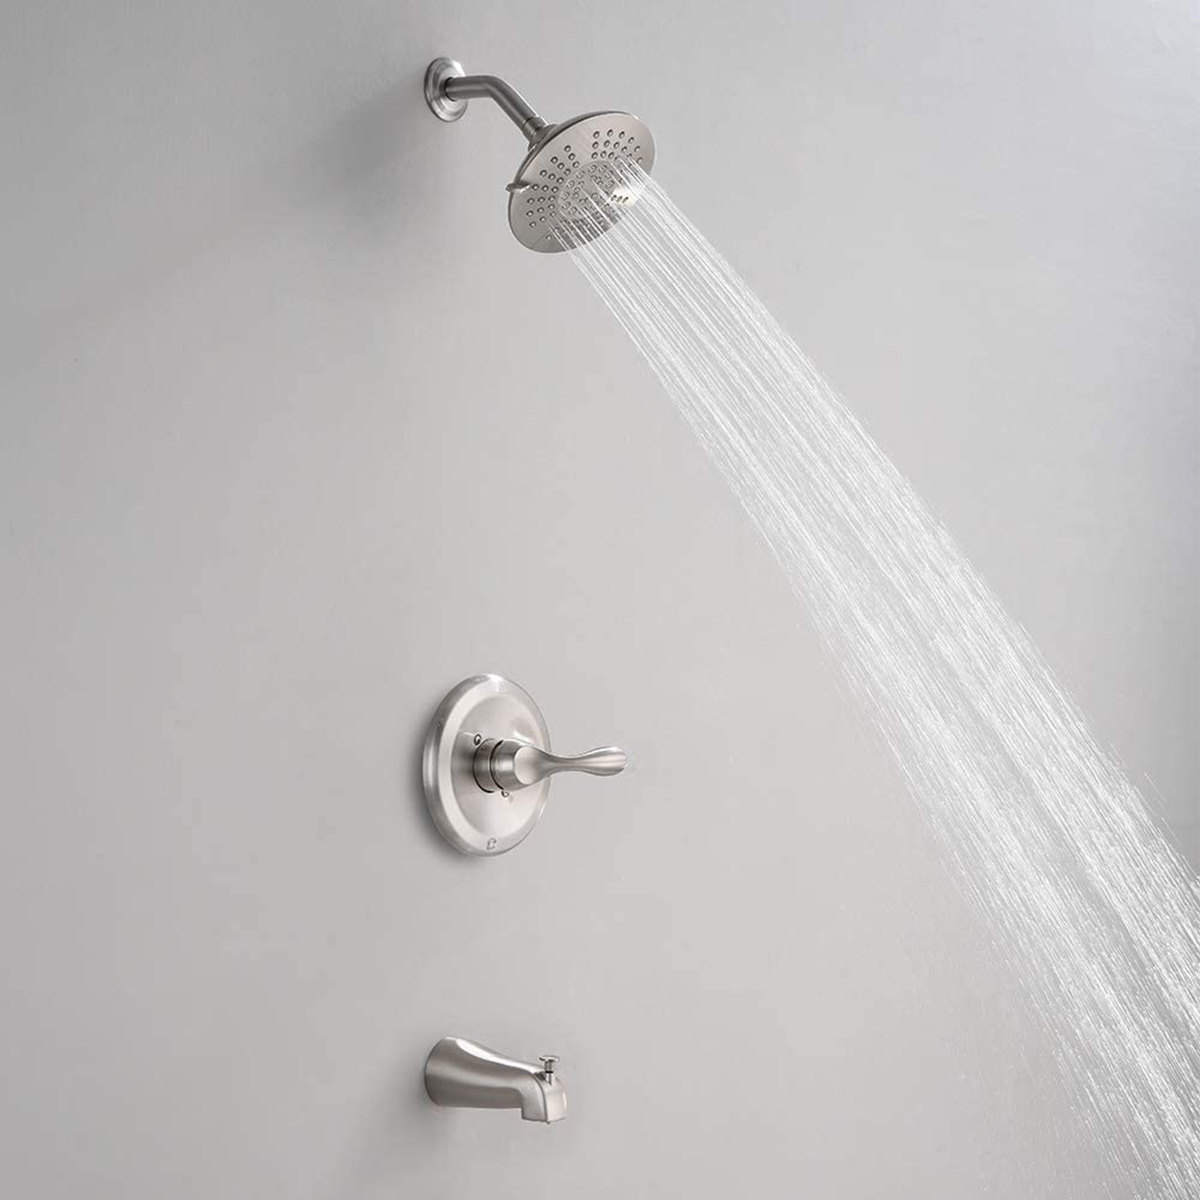 نظام الدش Aquacubic مجموعة حوض الاستحمام المثبت على الحائط وحنفية الدش مع محول زر الضغط